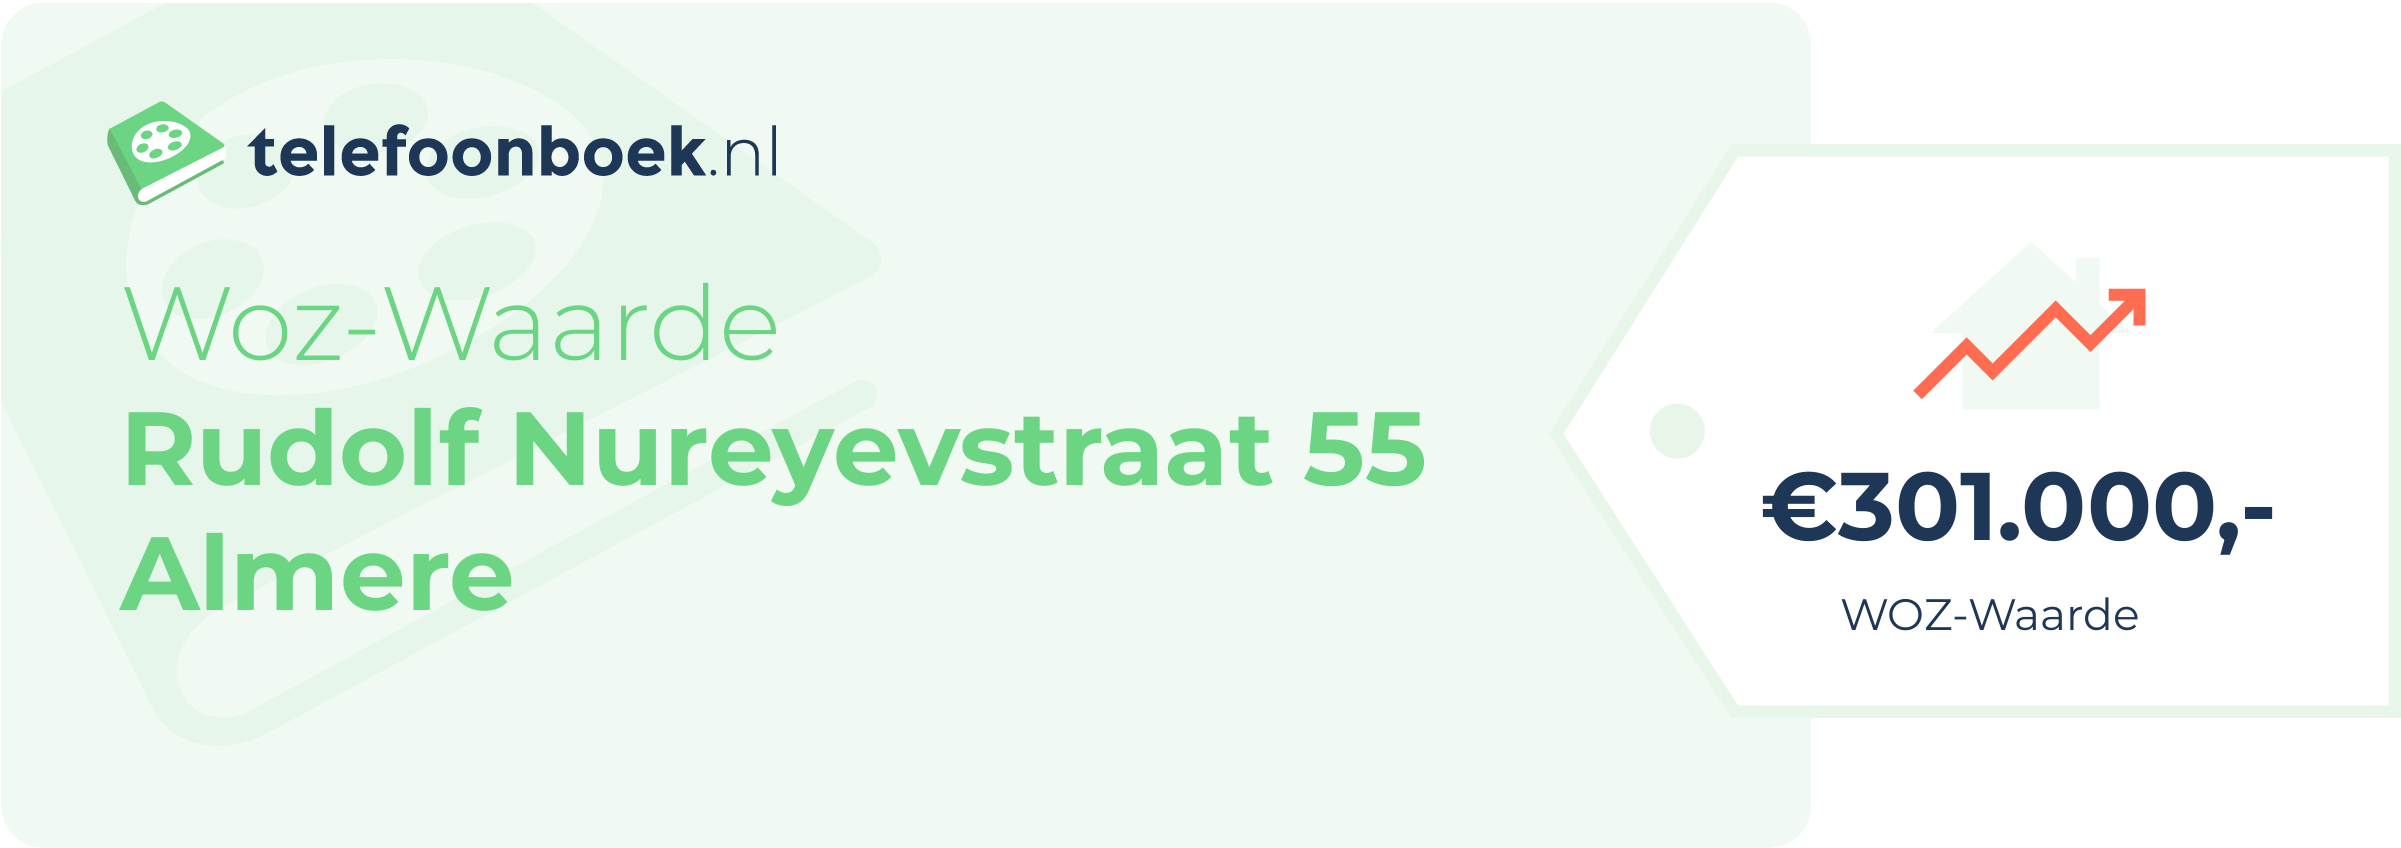 WOZ-waarde Rudolf Nureyevstraat 55 Almere